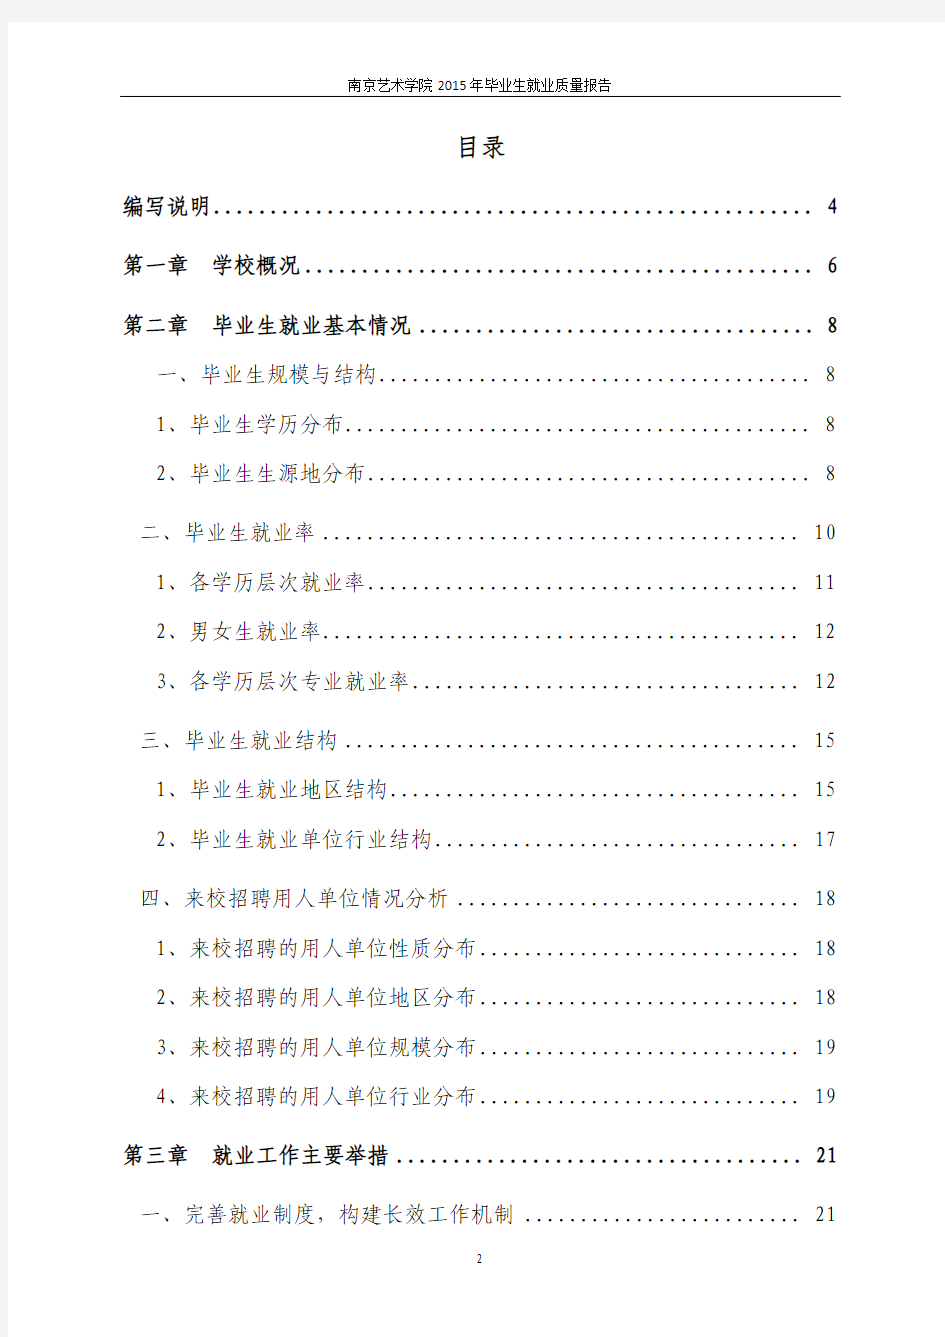 南京艺术学院2015年毕业生就业质量报告